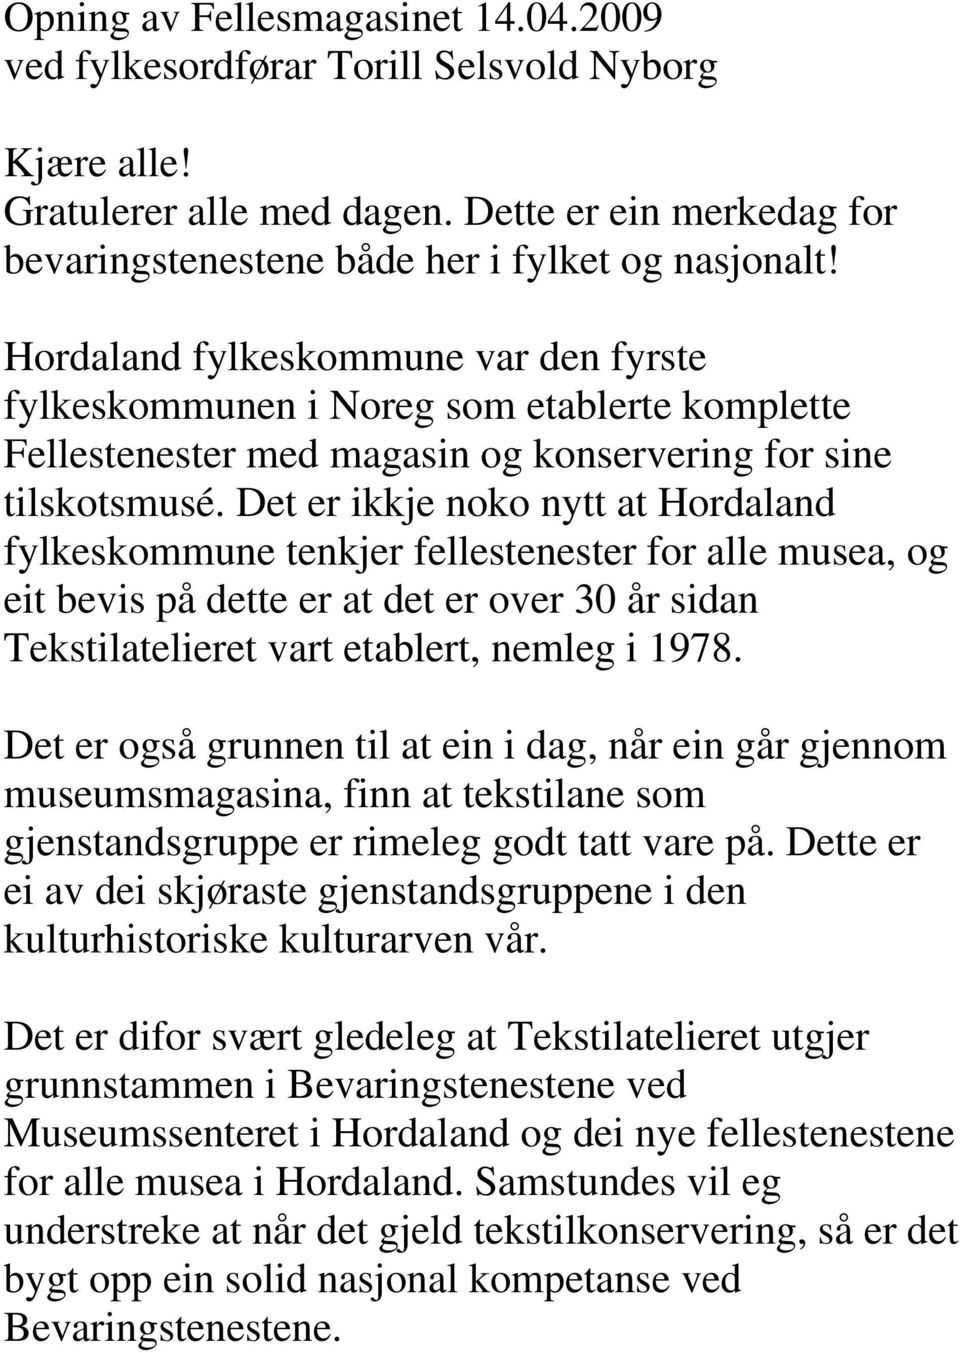 Det er ikkje noko nytt at Hordaland fylkeskommune tenkjer fellestenester for alle musea, og eit bevis på dette er at det er over 30 år sidan Tekstilatelieret vart etablert, nemleg i 1978.